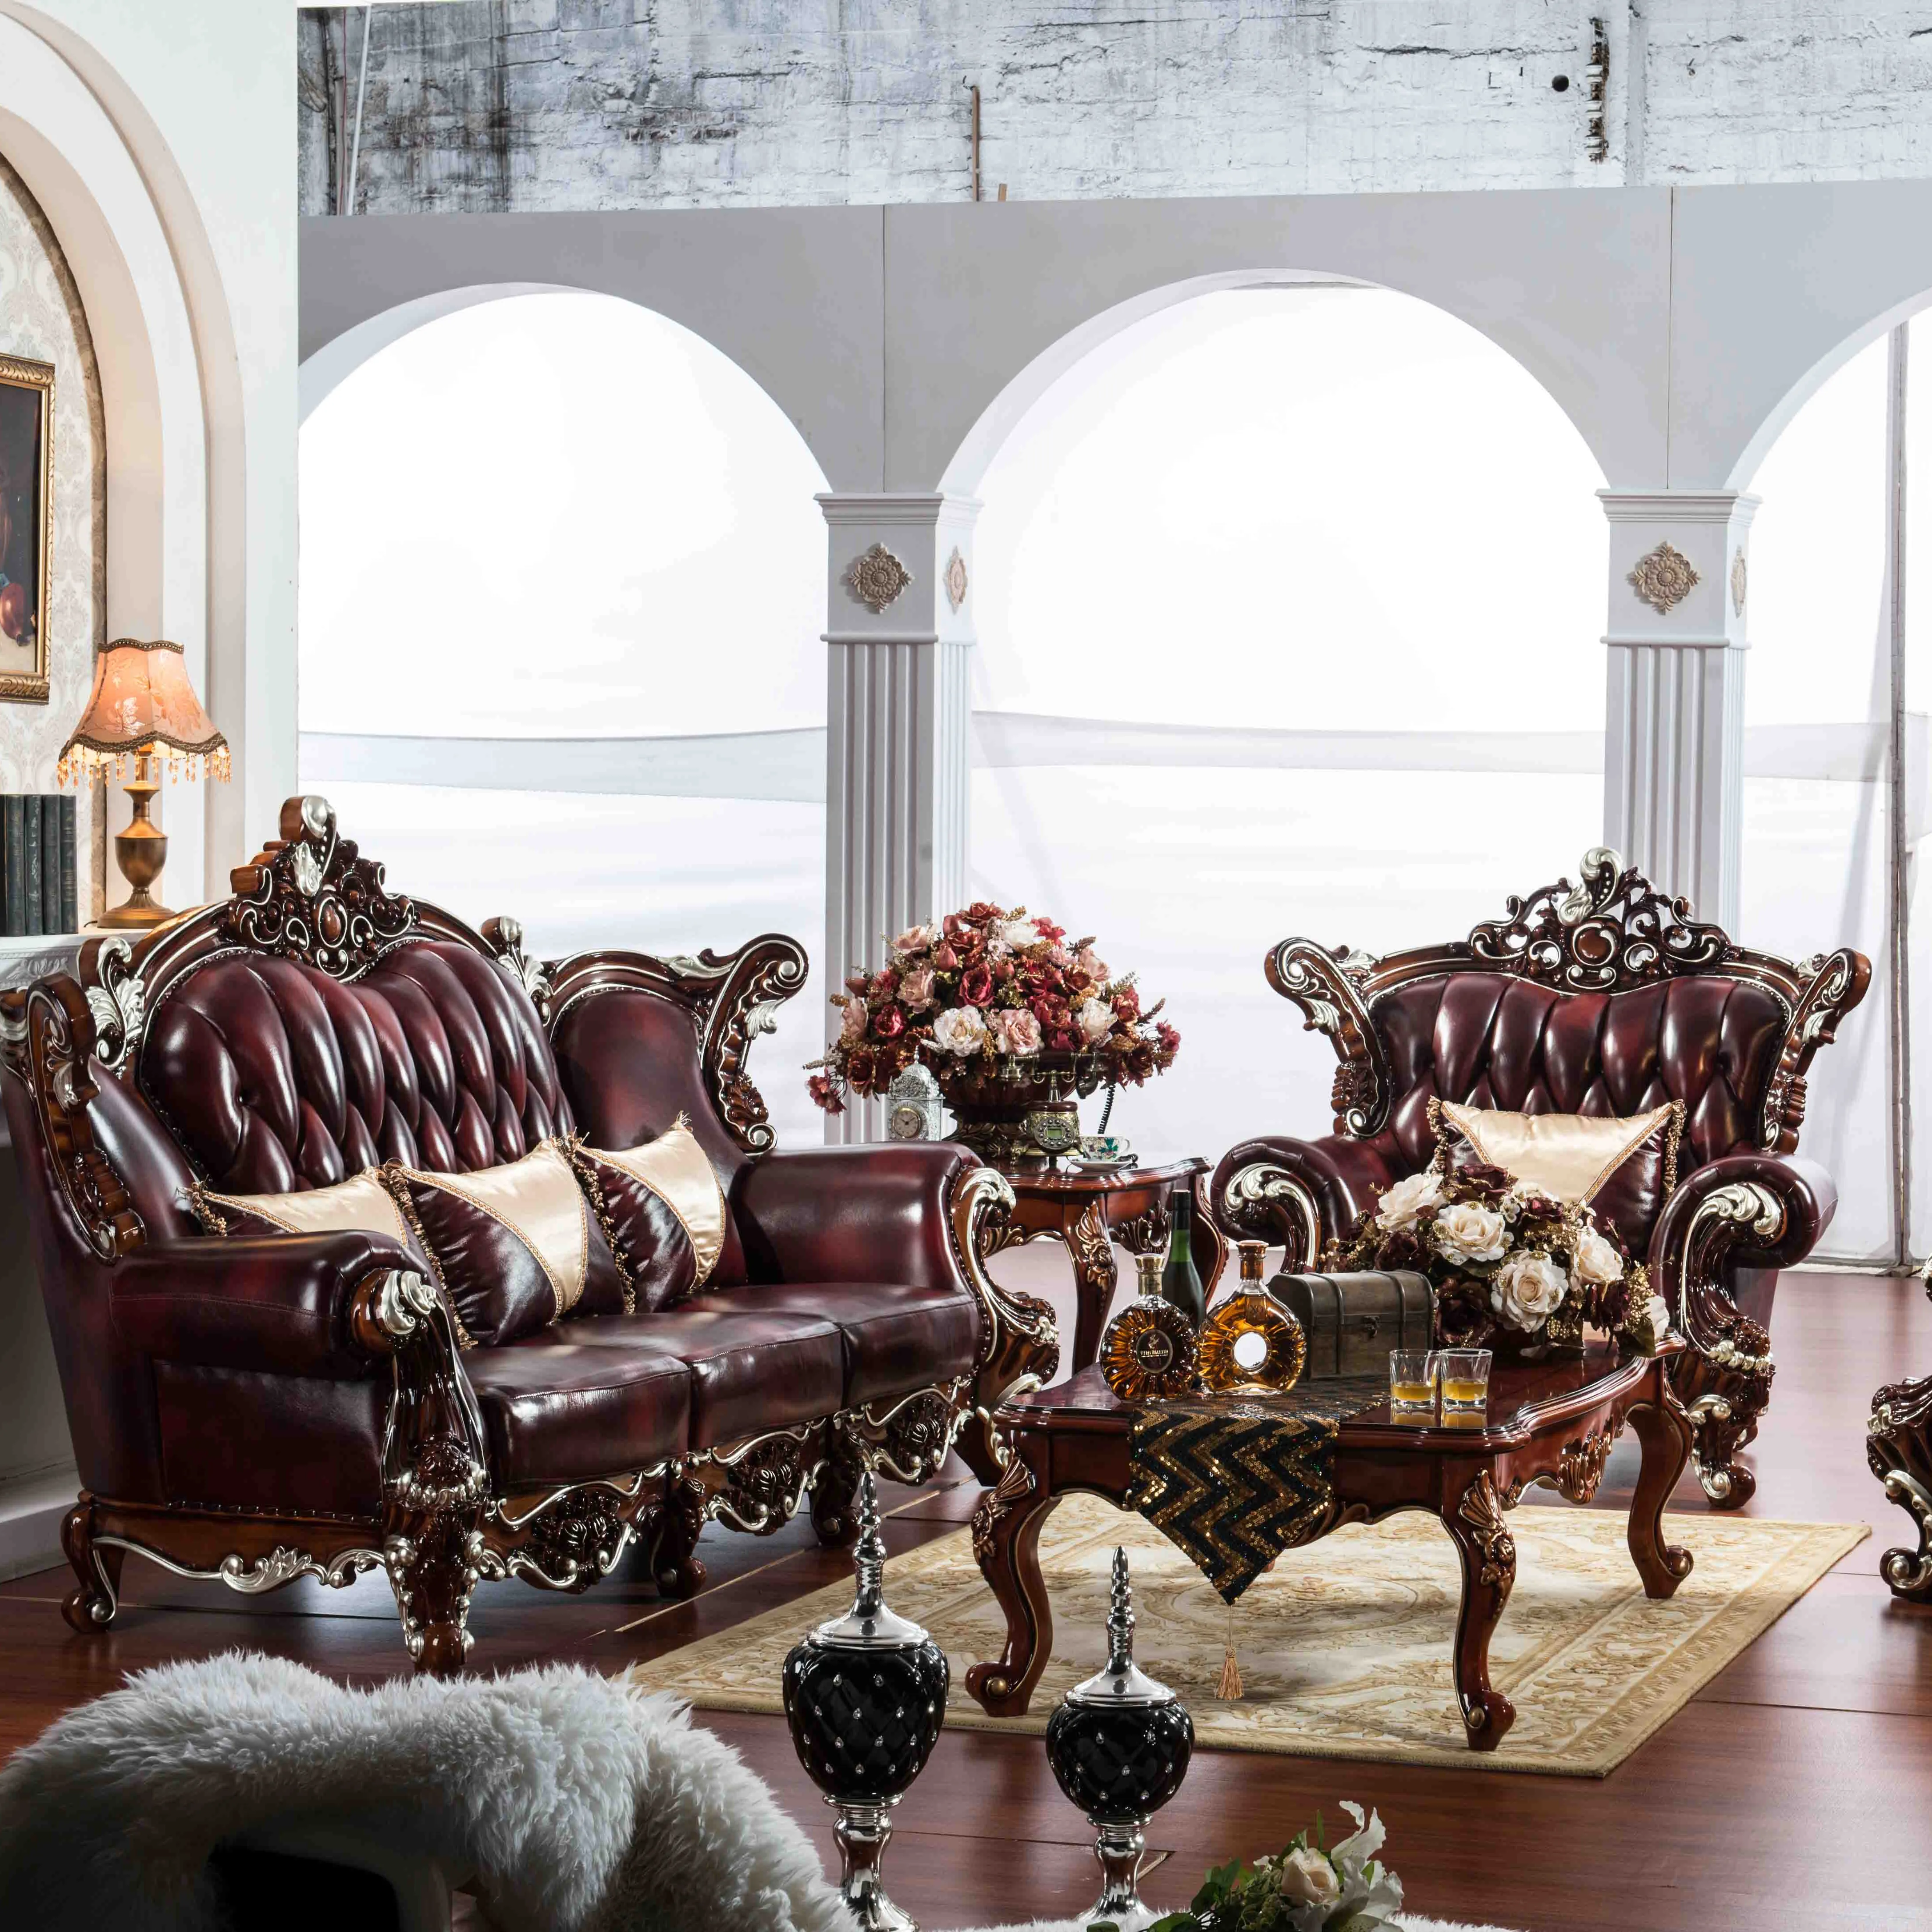 Royal Dubai Kulit Asli Sofa Rumah Ruang Tamu Furniture Arab Sofa Antik Kayu Set Gaya Eropa Sectional Sofa 1Set 25-30 Hari